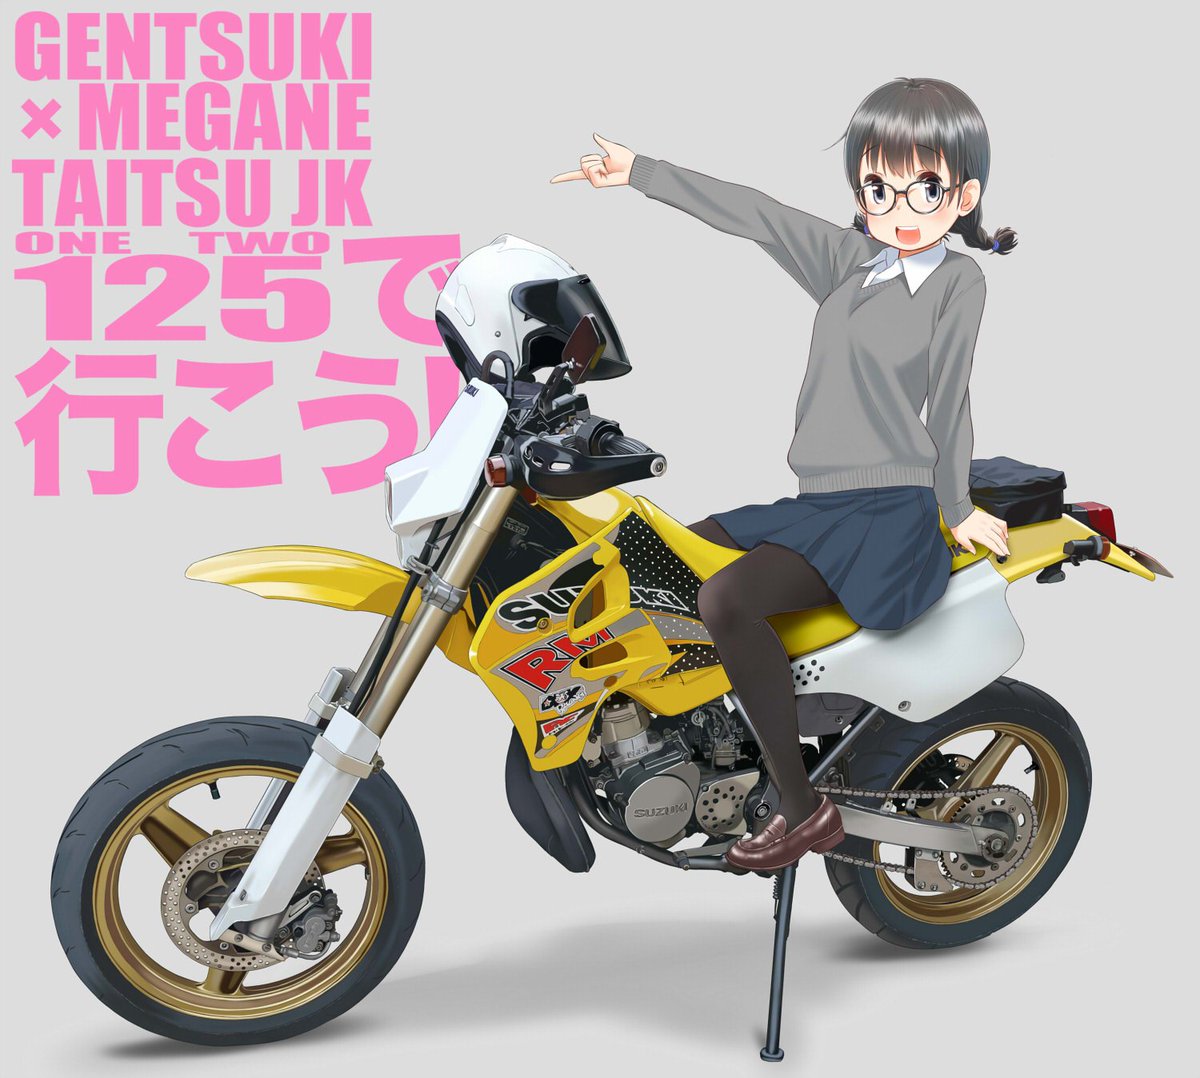 れつまるくん Auf Twitter 固定用 バイクと女の子とタイツとメガネ Kadokawa Newtype本誌に アニメ痛バイク ヒロイン な連載をしております 個人で原付きでメガネでタイツなjk本を出しております